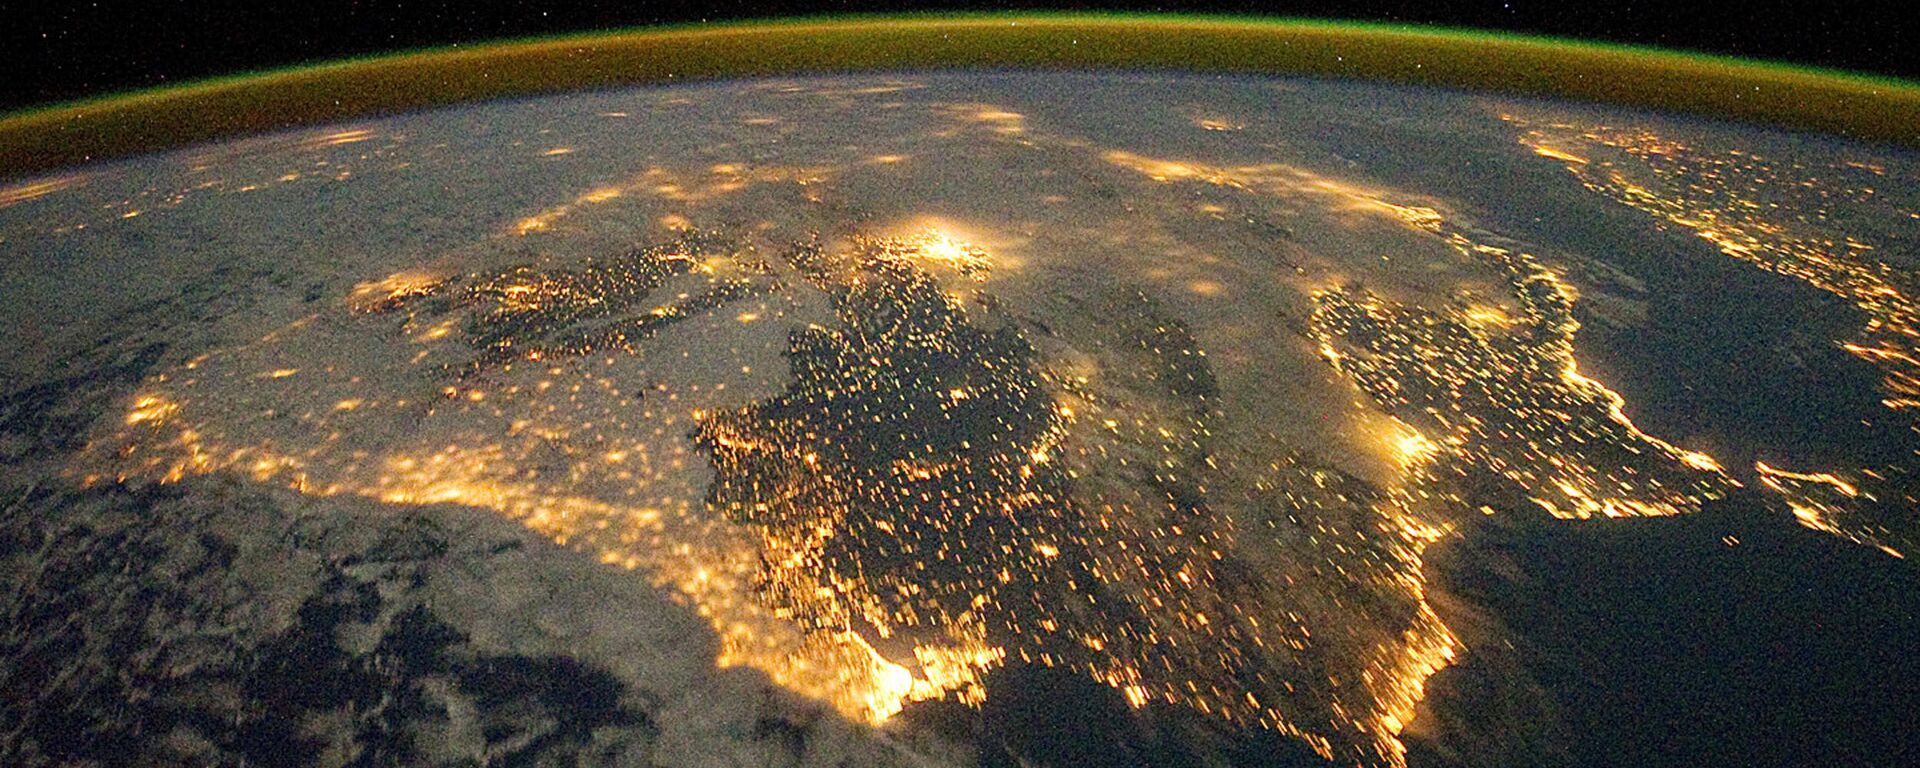 Фотография астронавта, опубликованная Земной обсерваторией НАСА 26 декабря 2011 года - Sputnik Абхазия, 1920, 13.11.2022